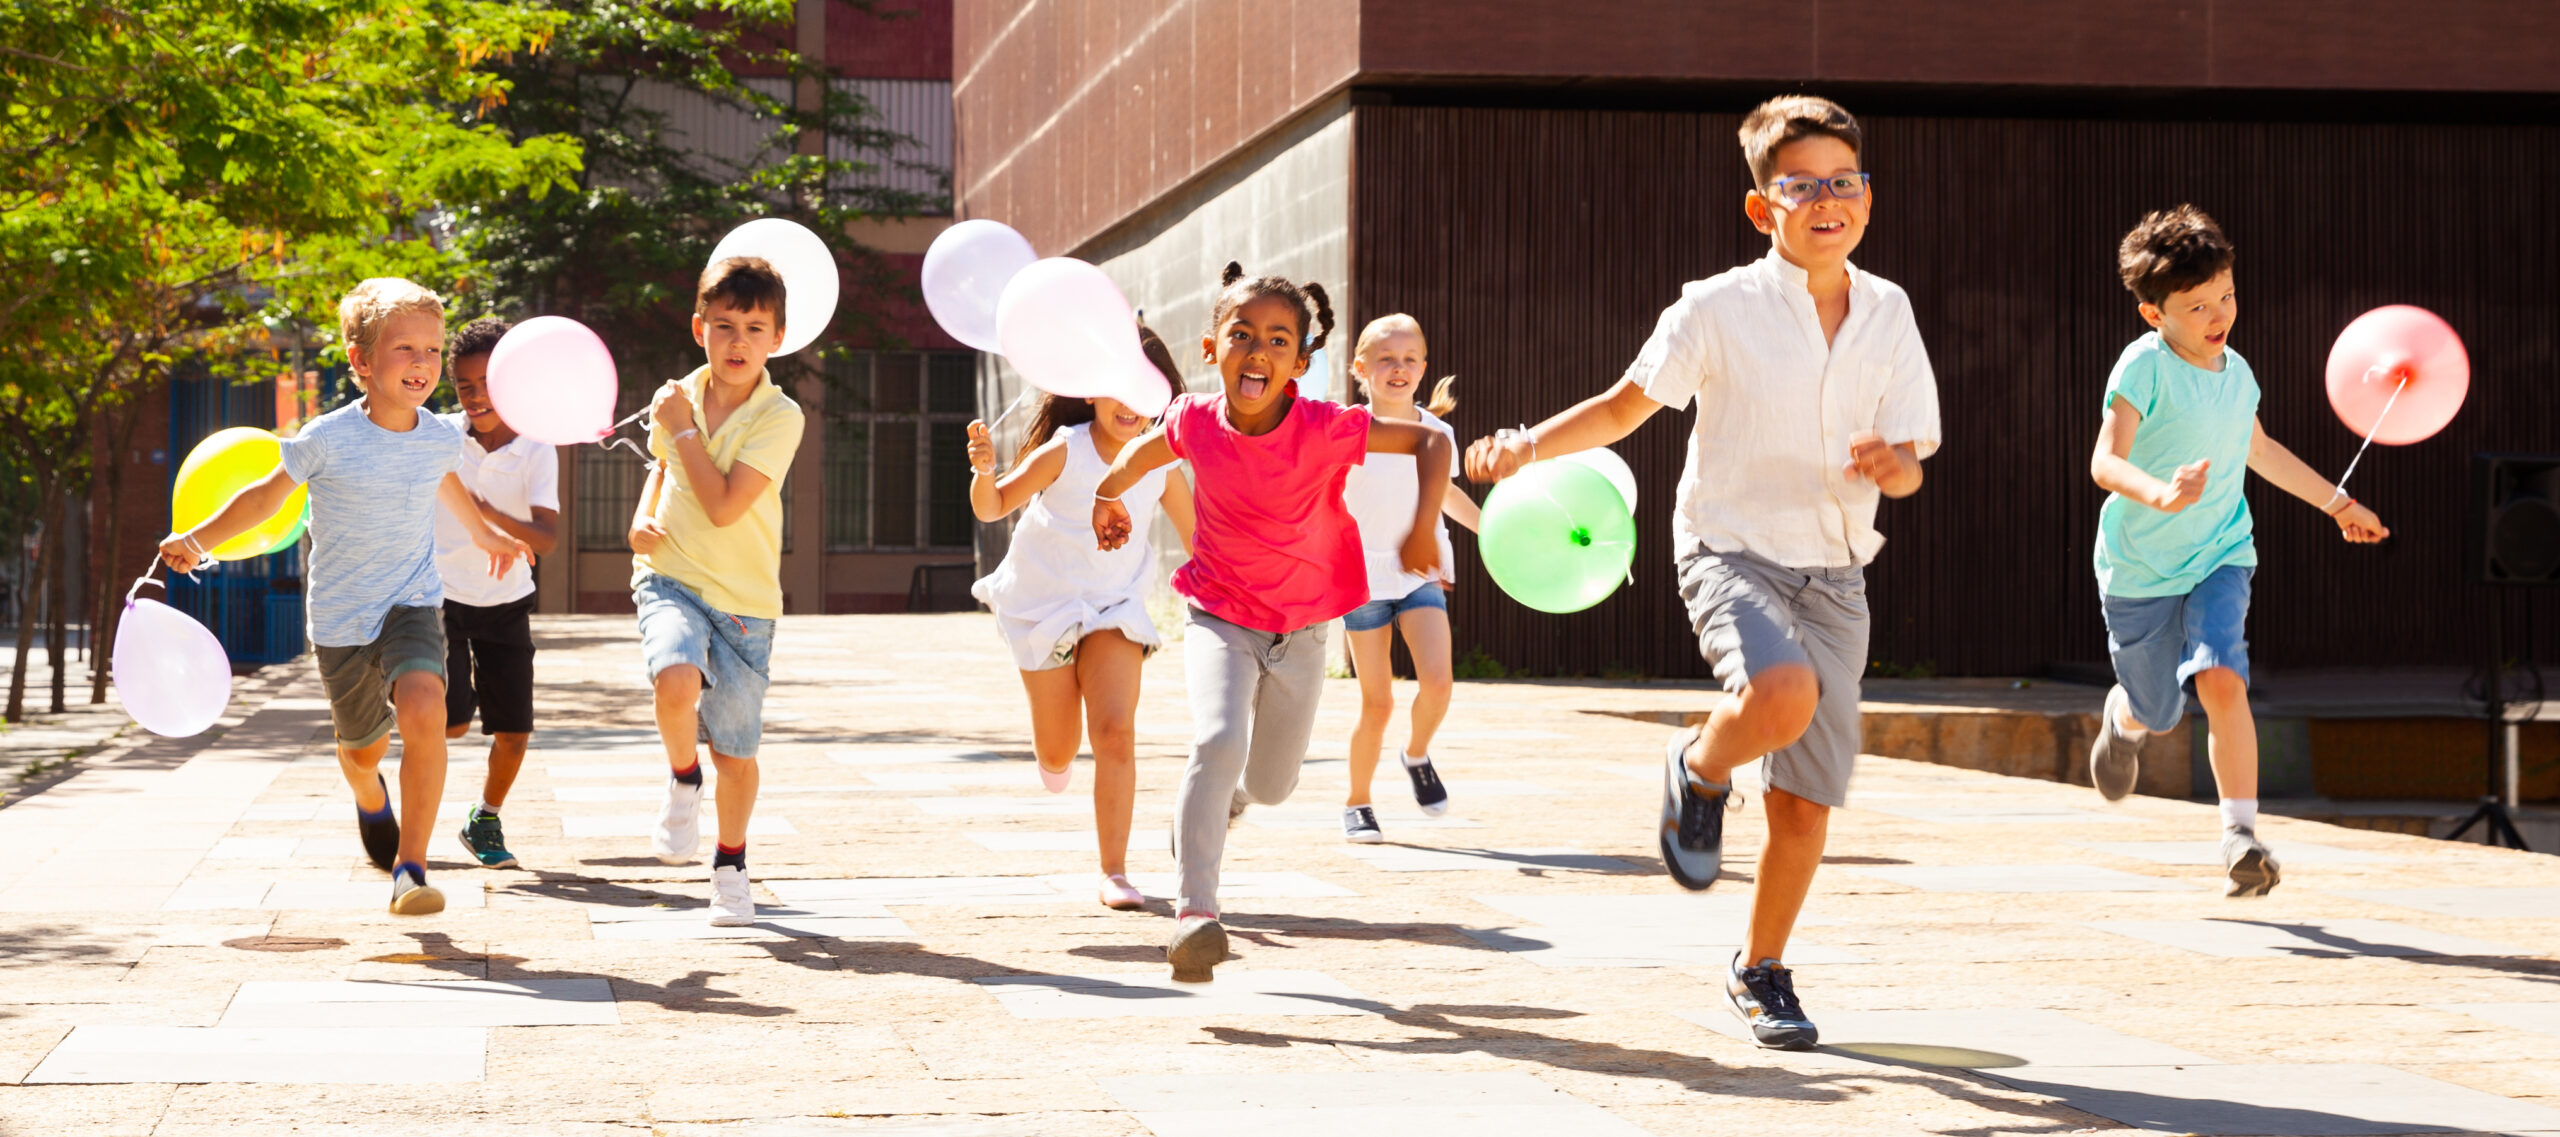 Niños felices con globos corren en la calle de la ciudad de verano